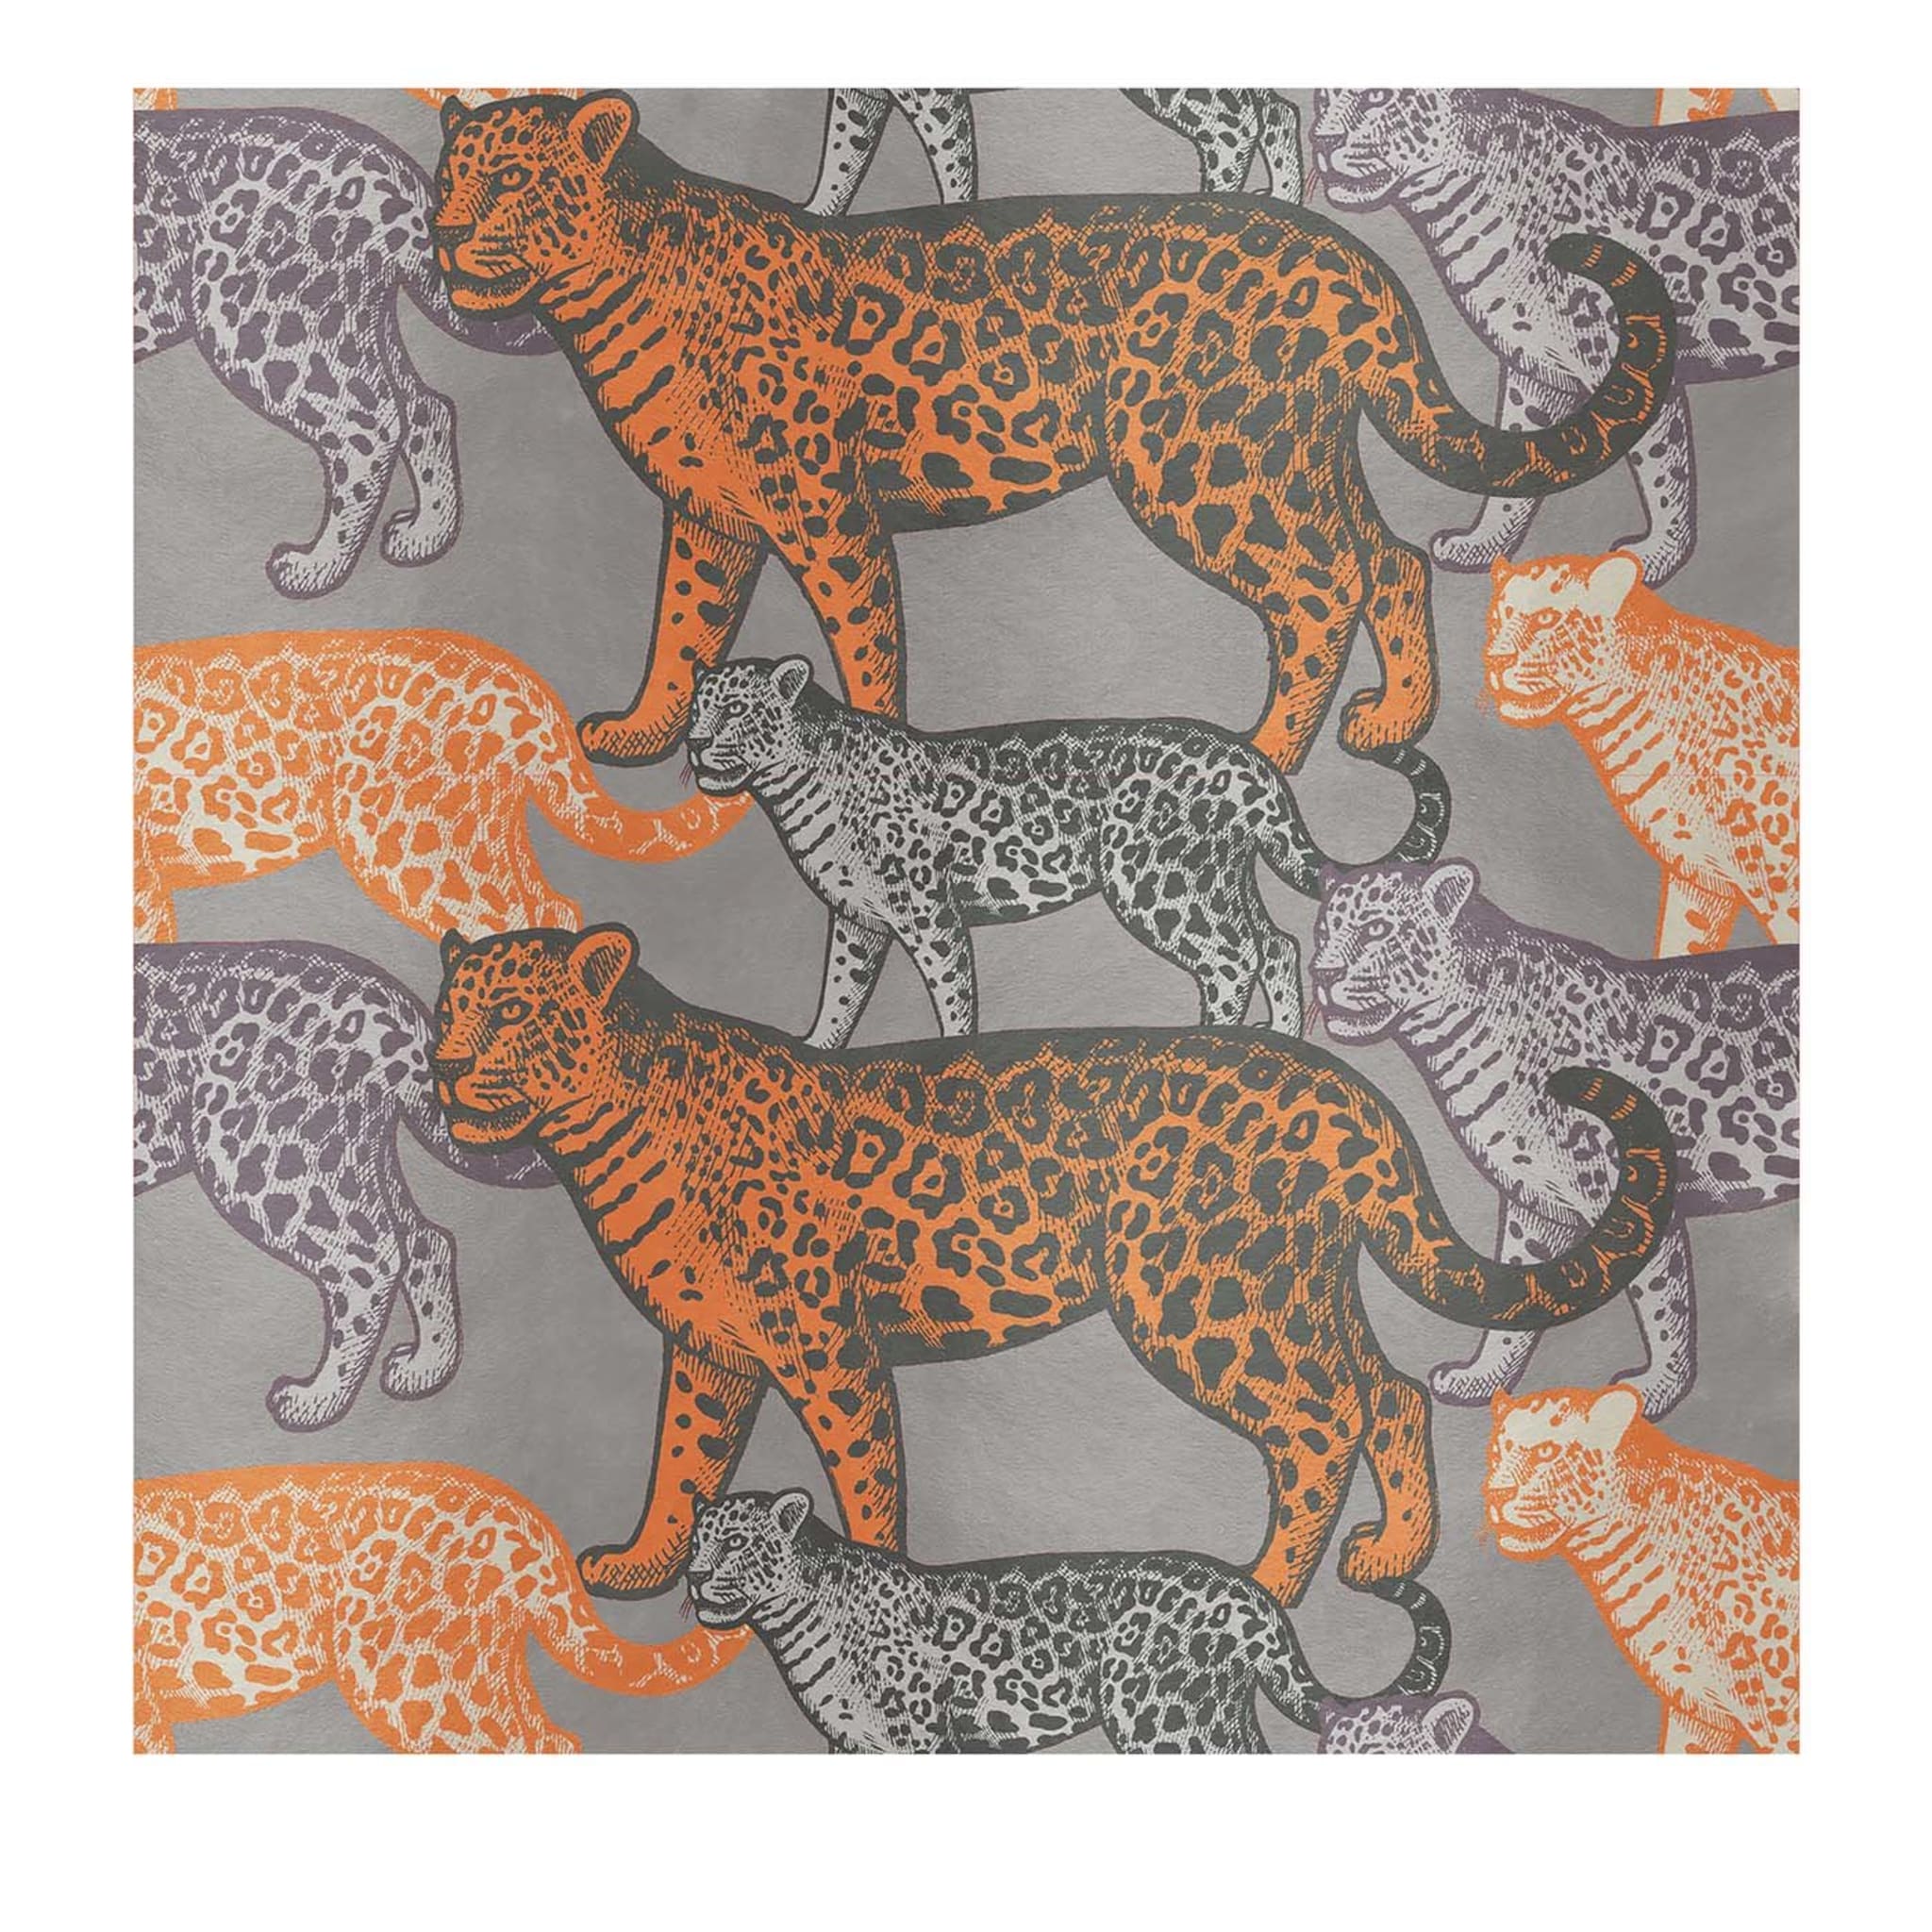 Walking Leopards Panel naranja nº 2 - Vista principal